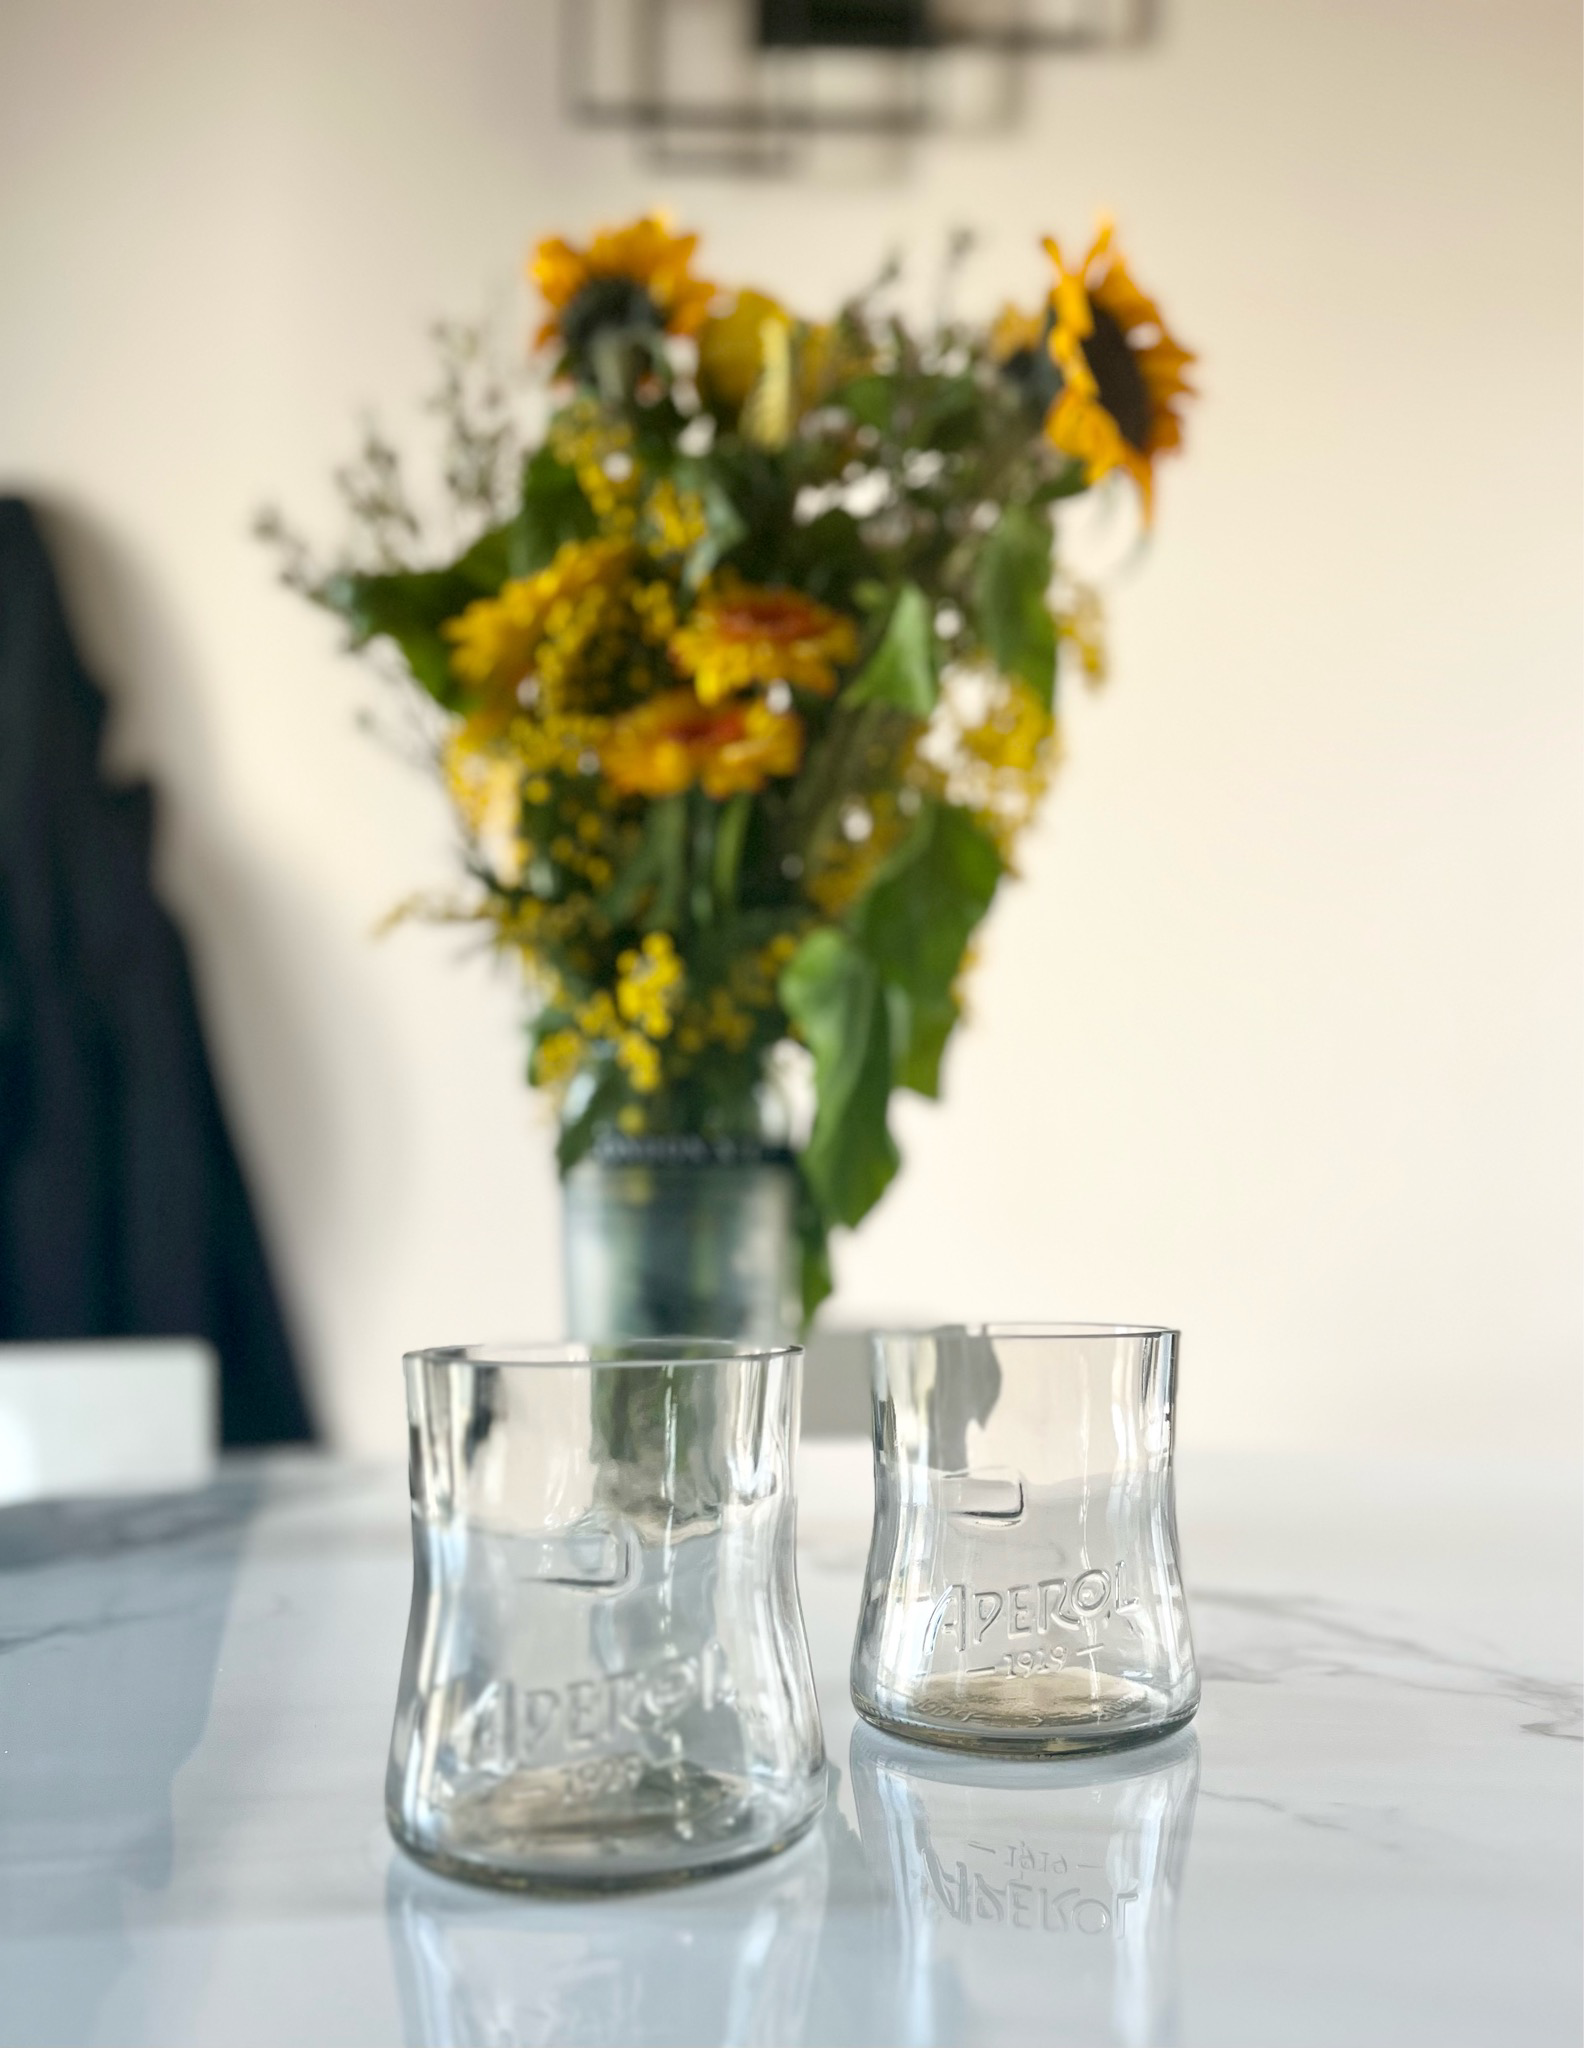 Bicchieri da Aperol spritz – La barista disoccupata